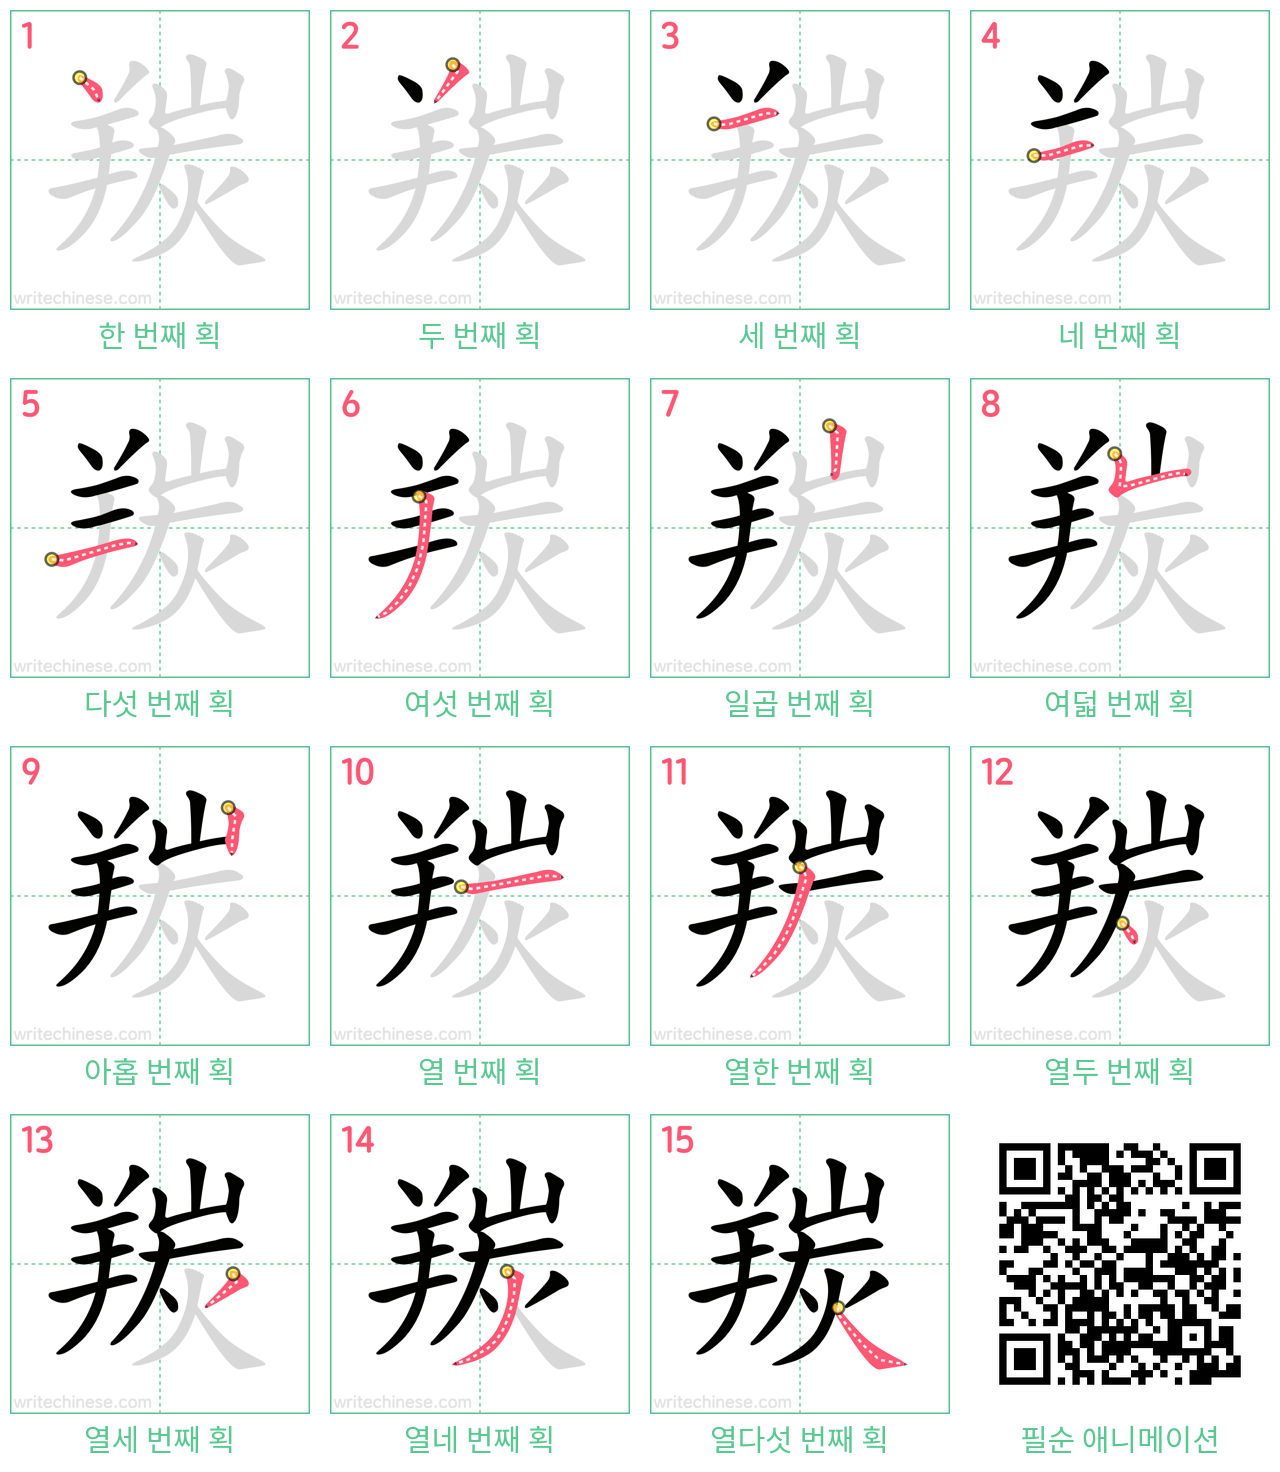 羰 step-by-step stroke order diagrams